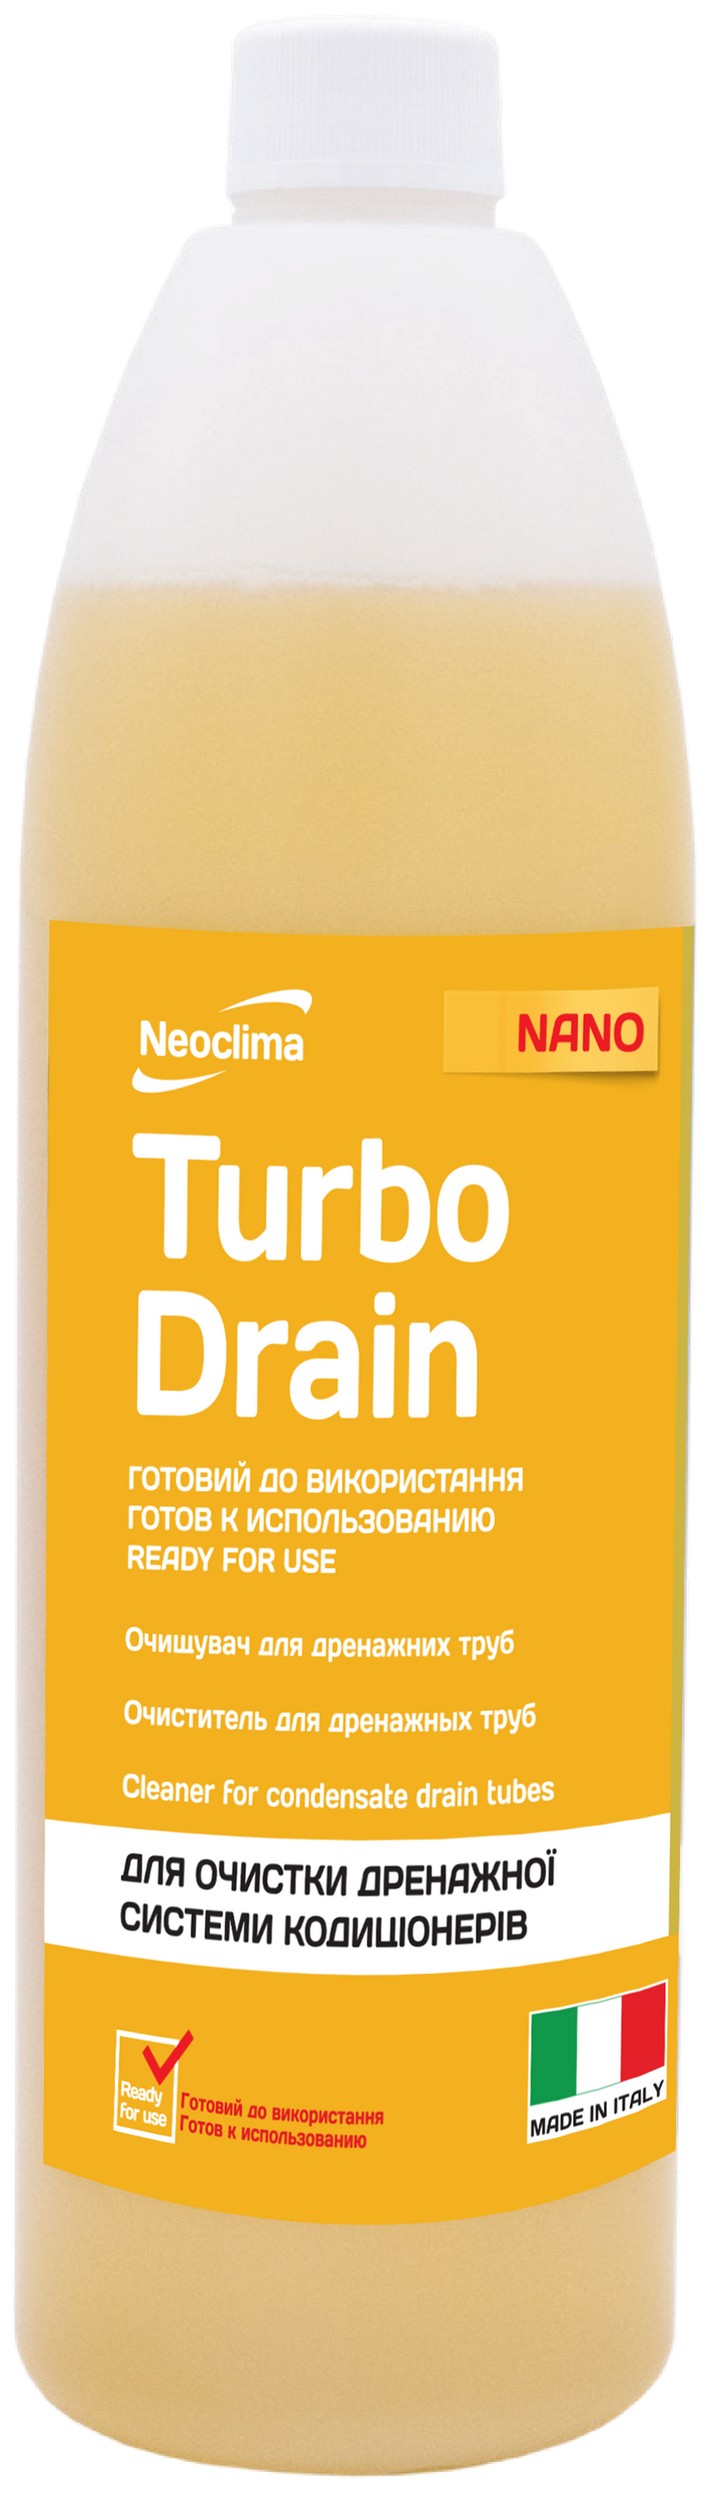 Очищувач внутрішнього блоку Neoclima Тurbo Drain 1 л, готовий розчин в інтернет-магазині, головне фото